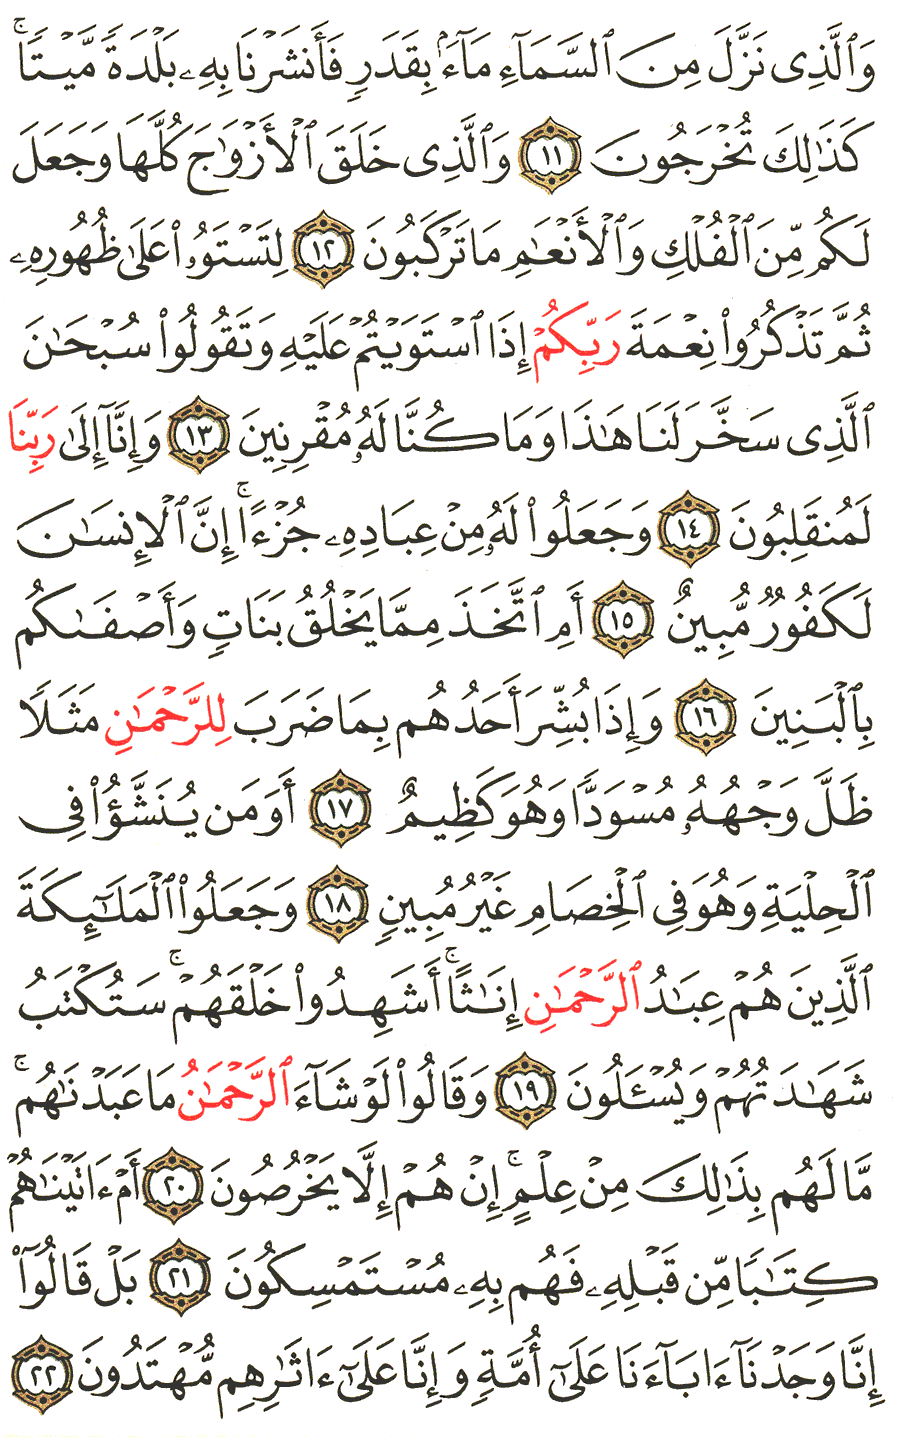 الصفحة 490 من القرآن الكريم